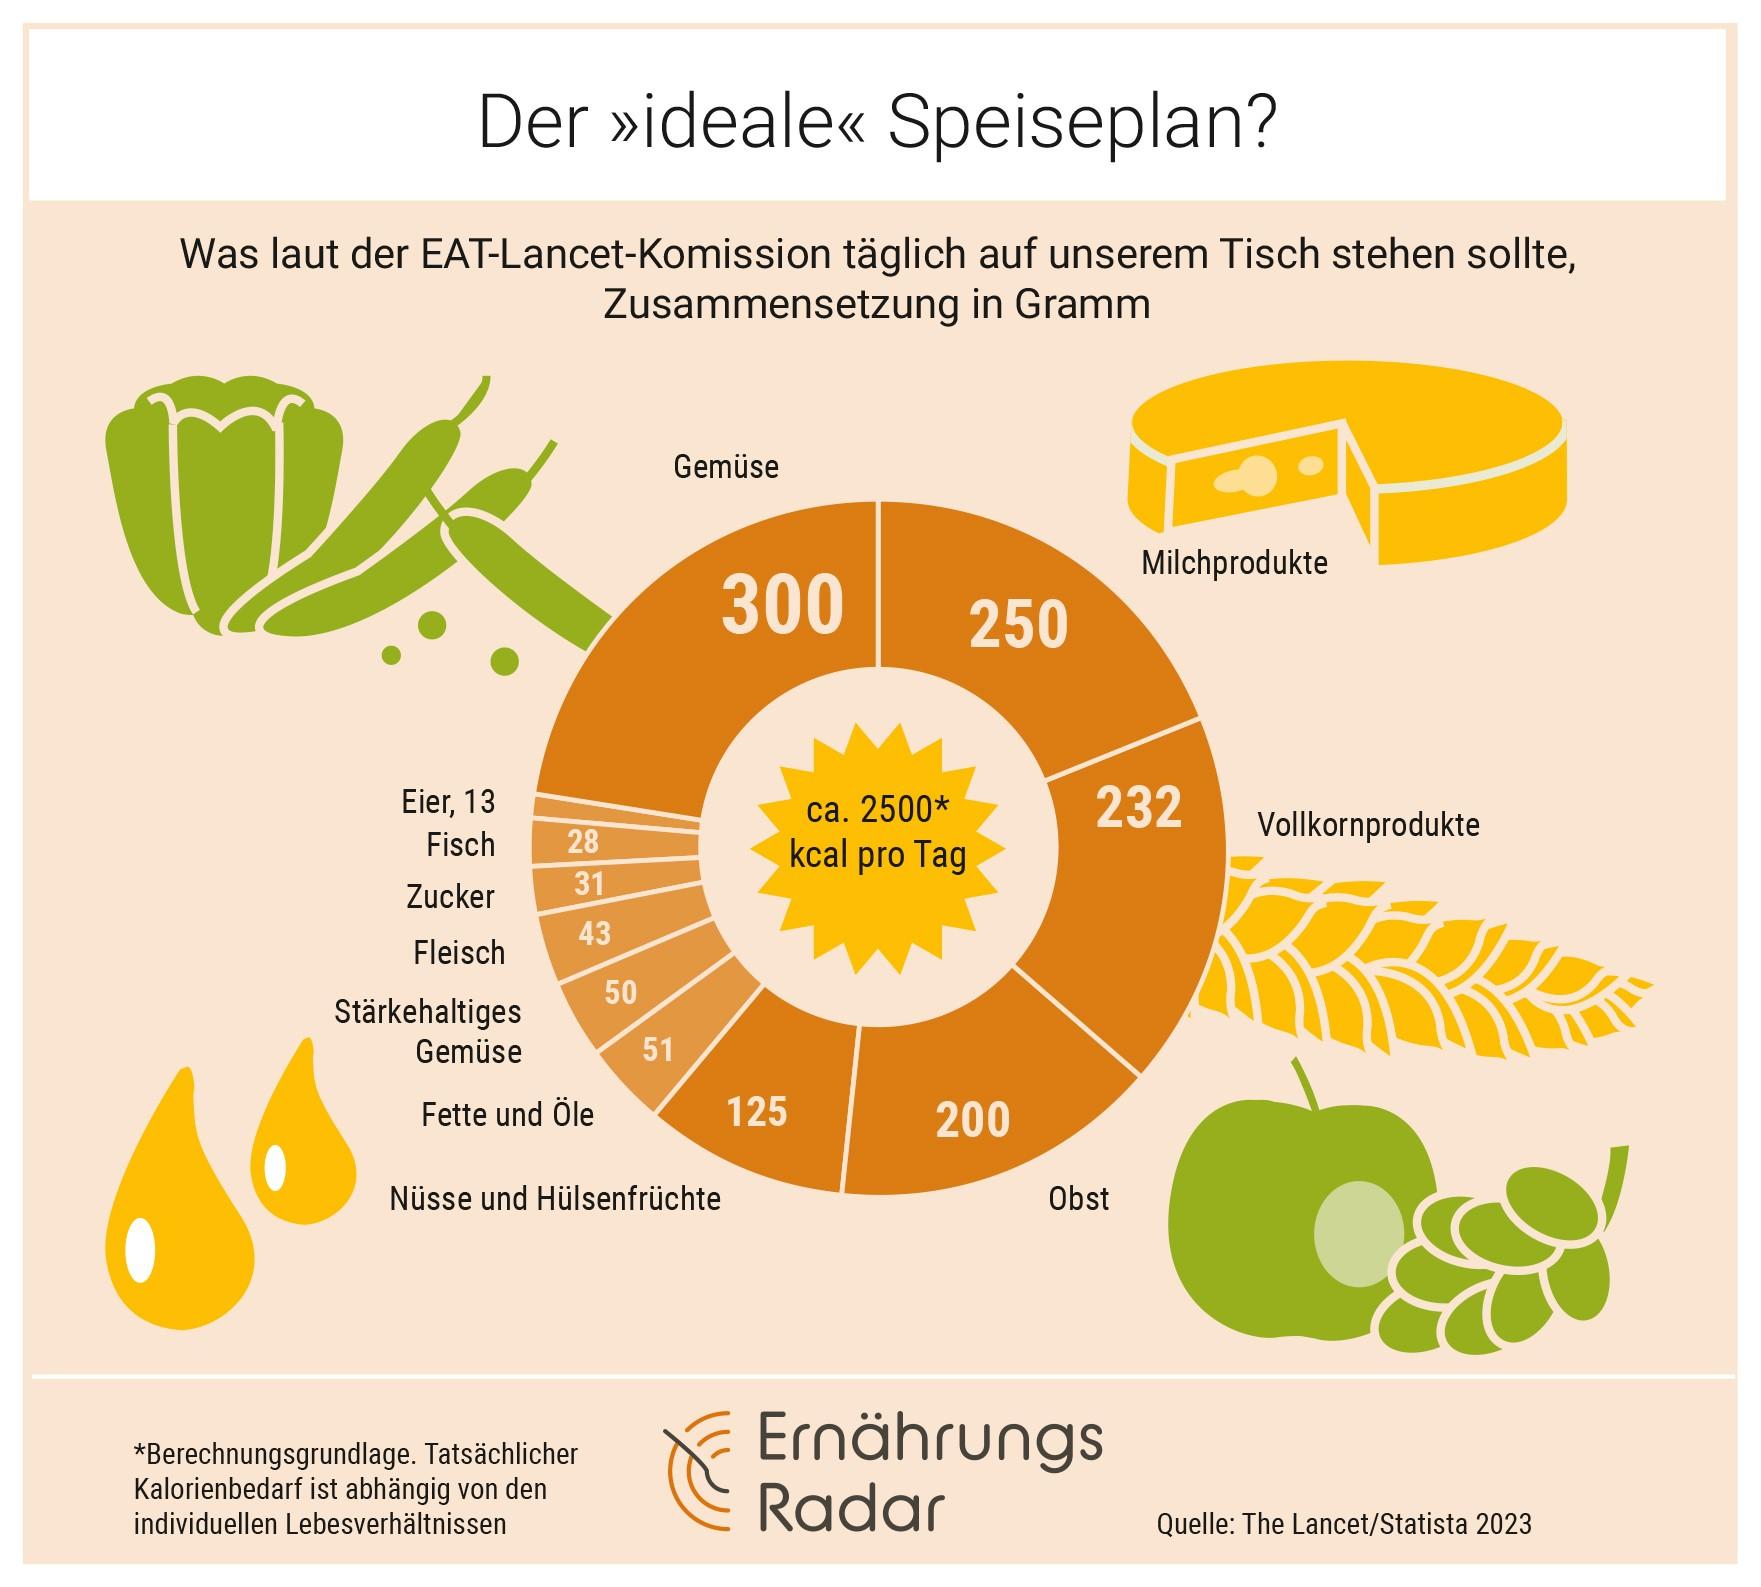 Tellerdiagramm, das anzeigt, welche Mengen wir von den jeweiligen Lebensmitteln täglich essen sollten, nach Angaben der EAT-Lancet-Kommission